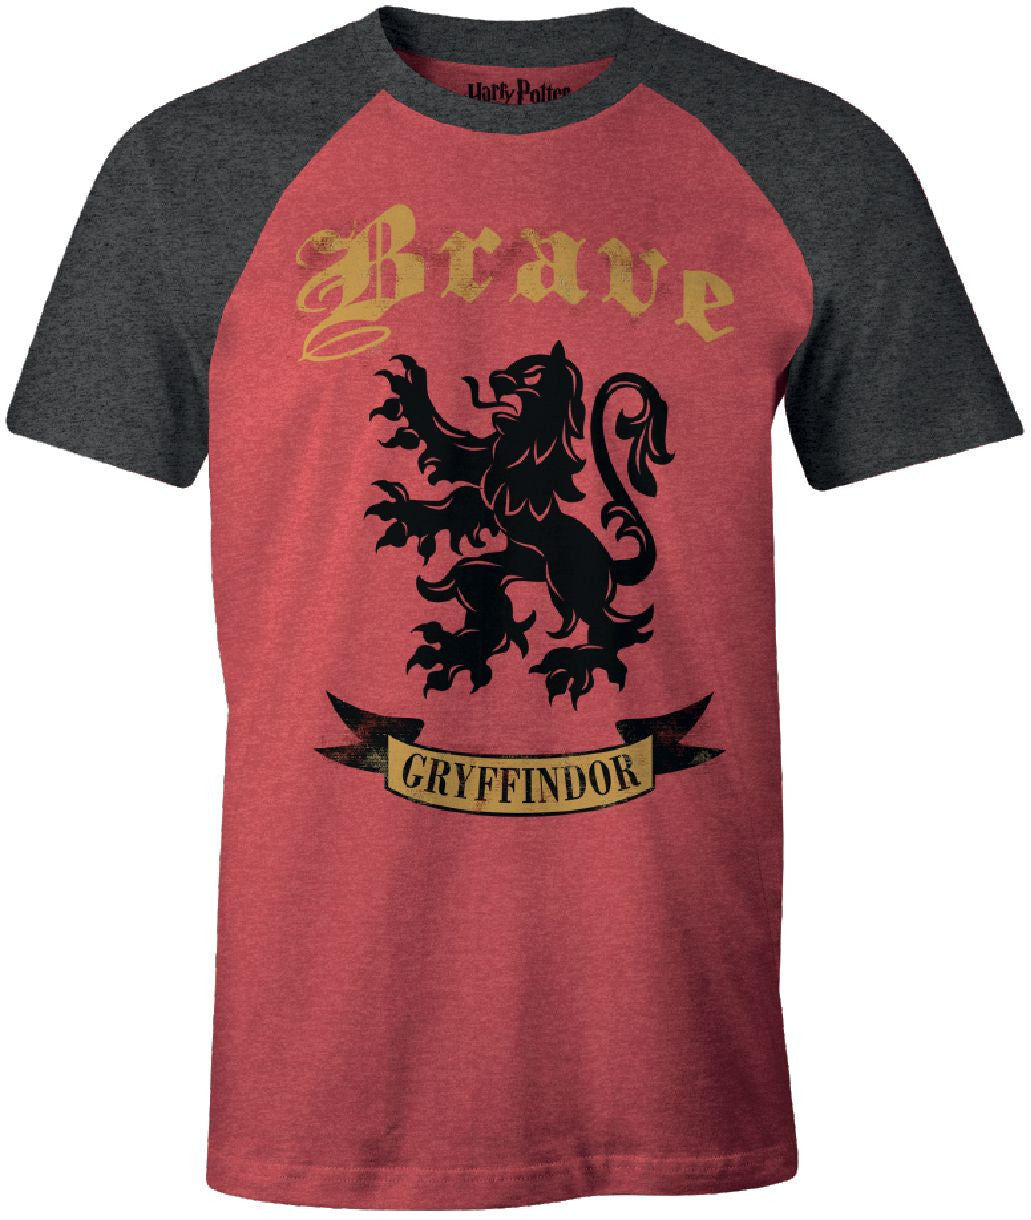 T-shirt Harry Potter - Gryffindor Brave